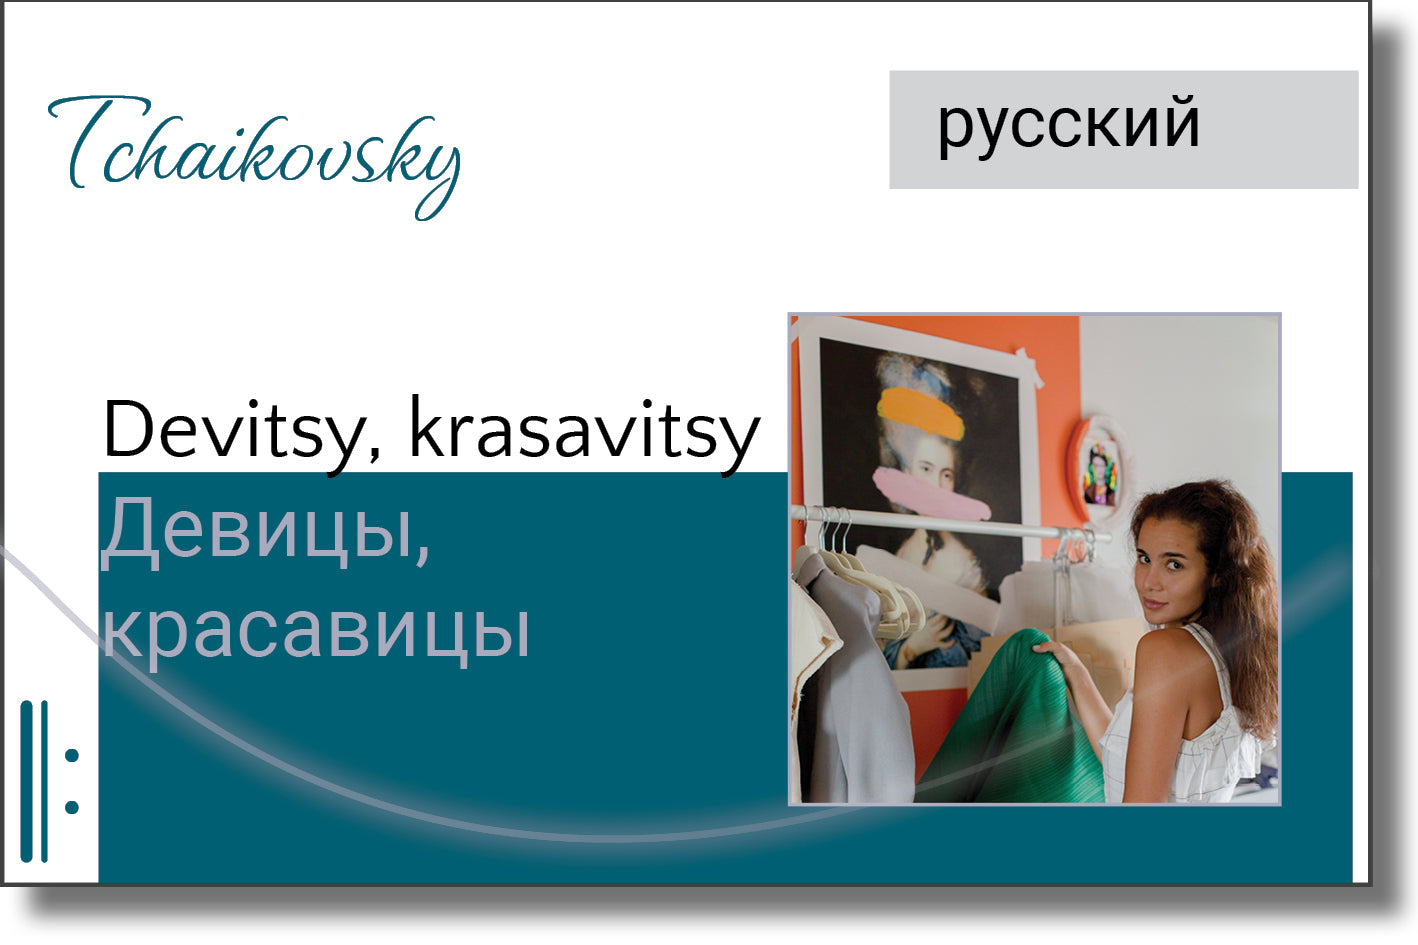 Tchaikovsky - Devitsy, krasavitsy / Девицы, красавицы